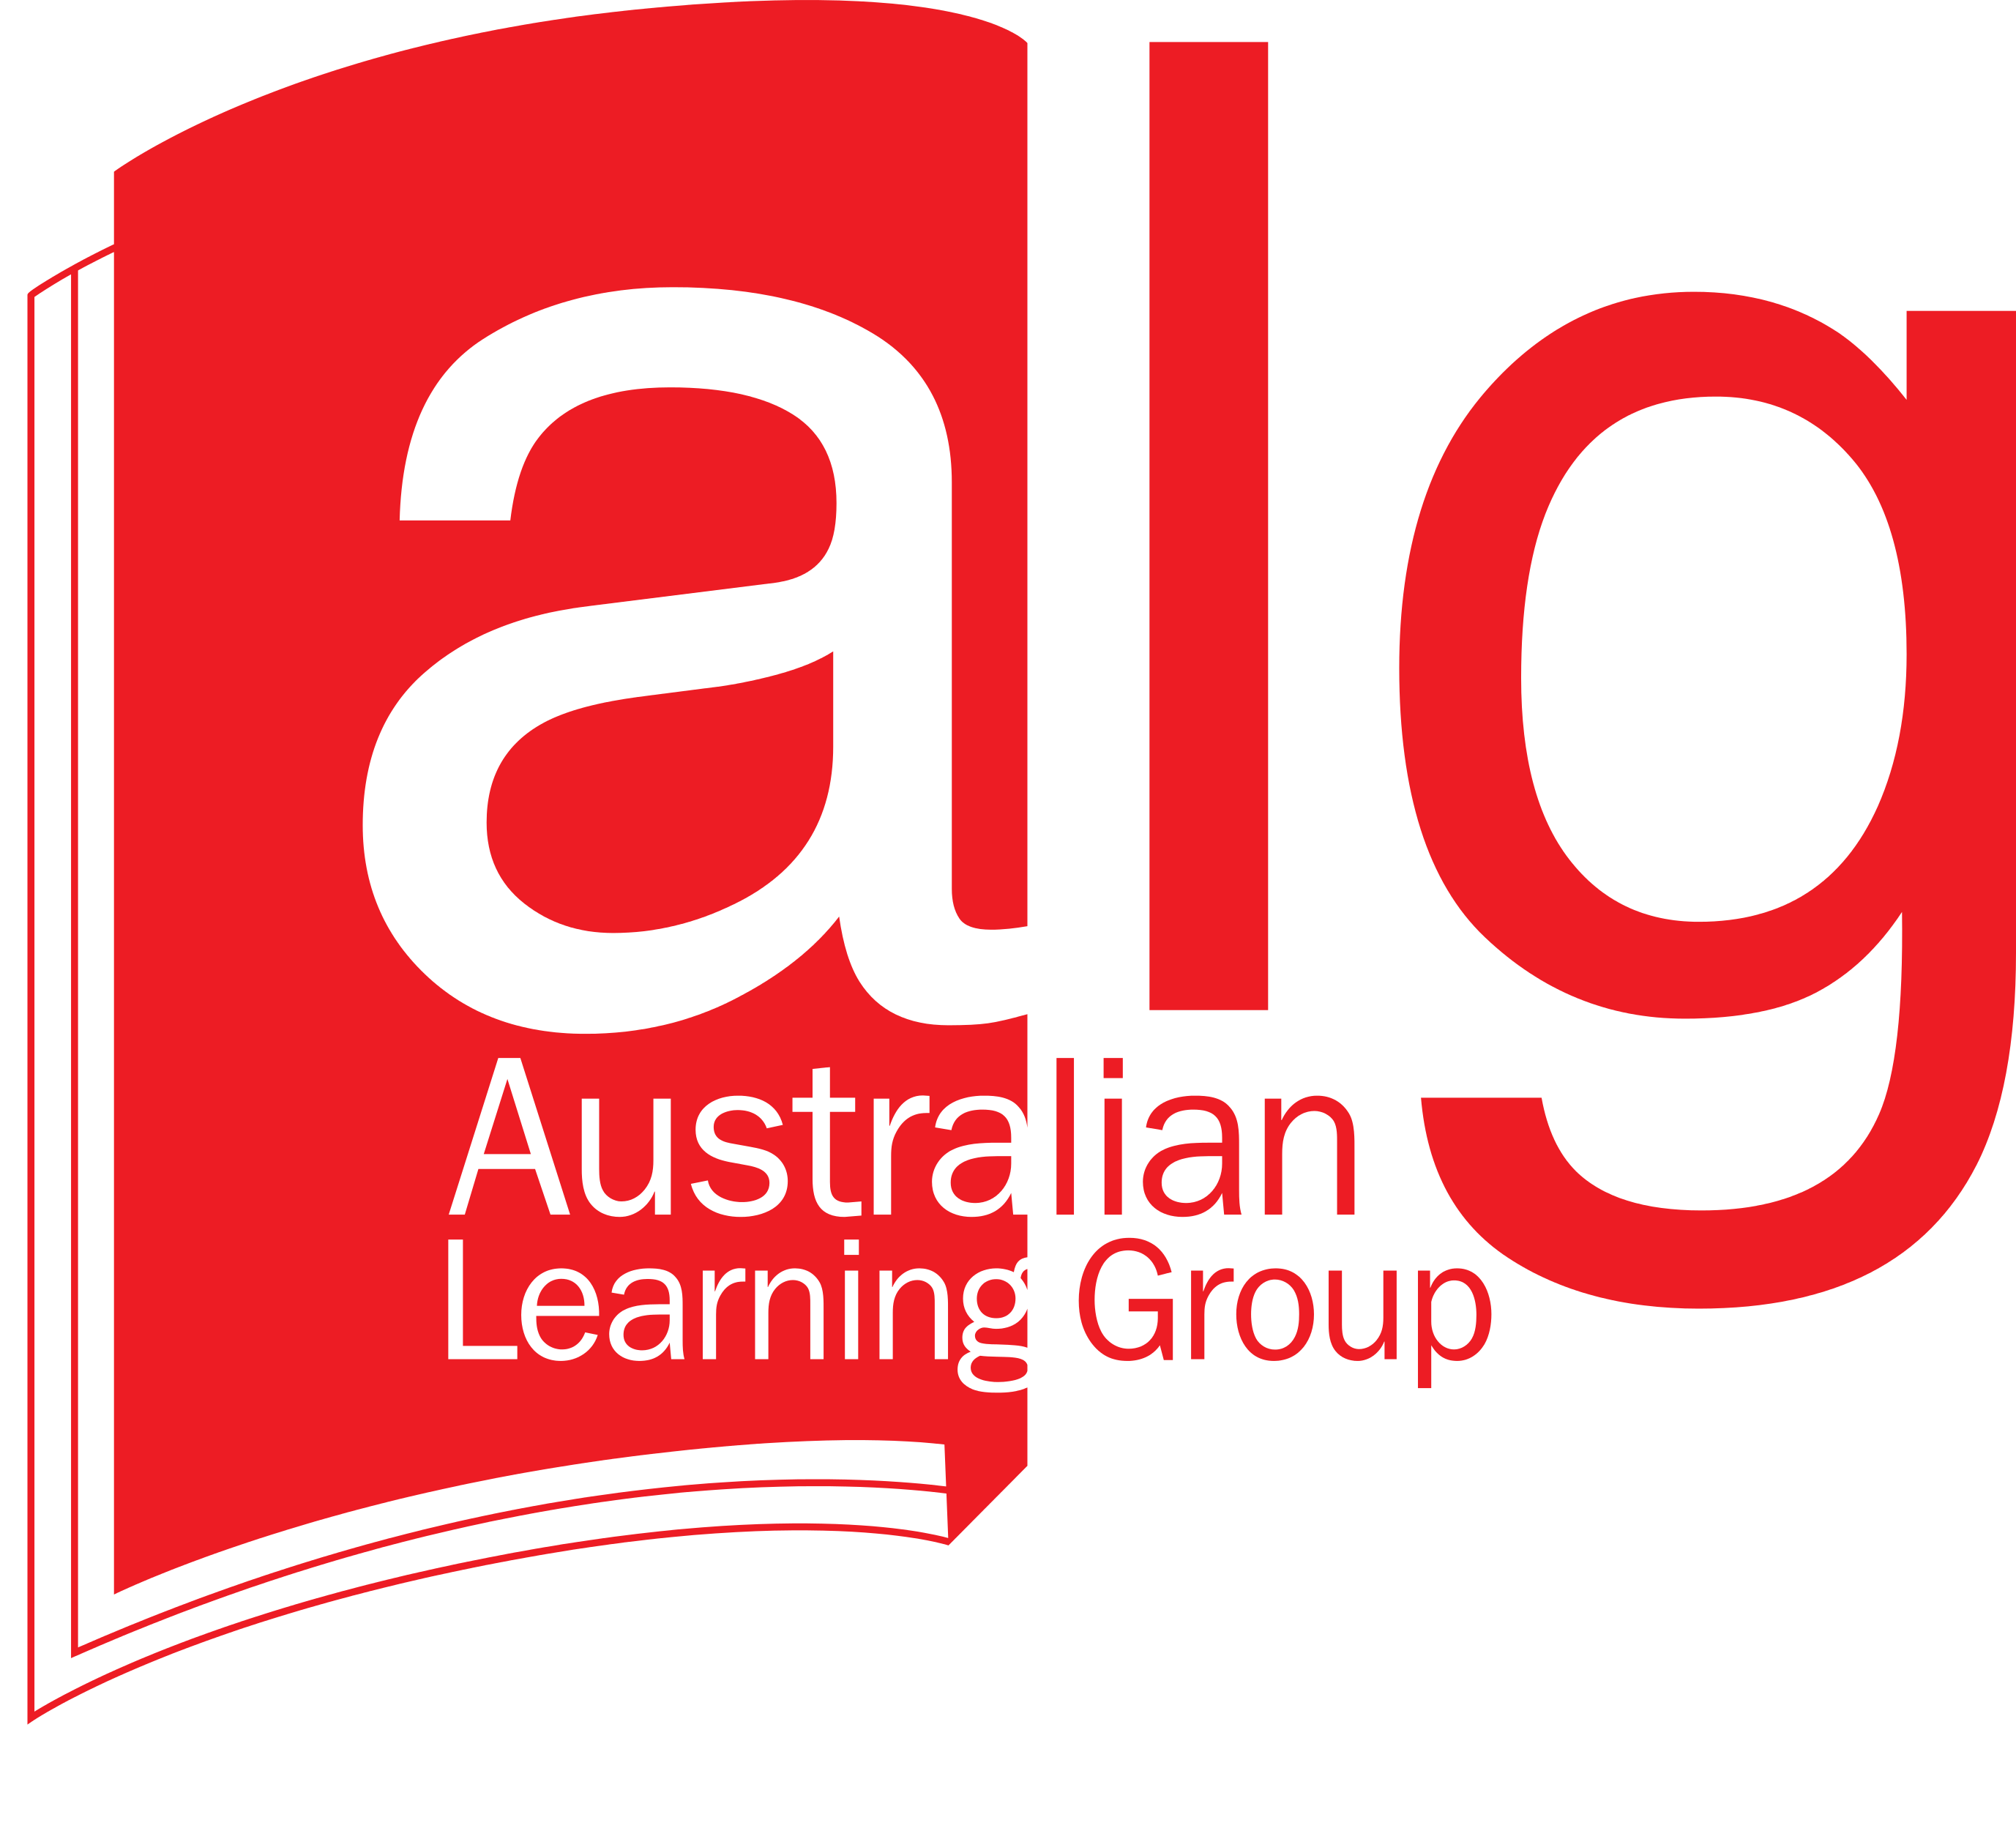 Alg Logo - Logos - Australian Learning Group